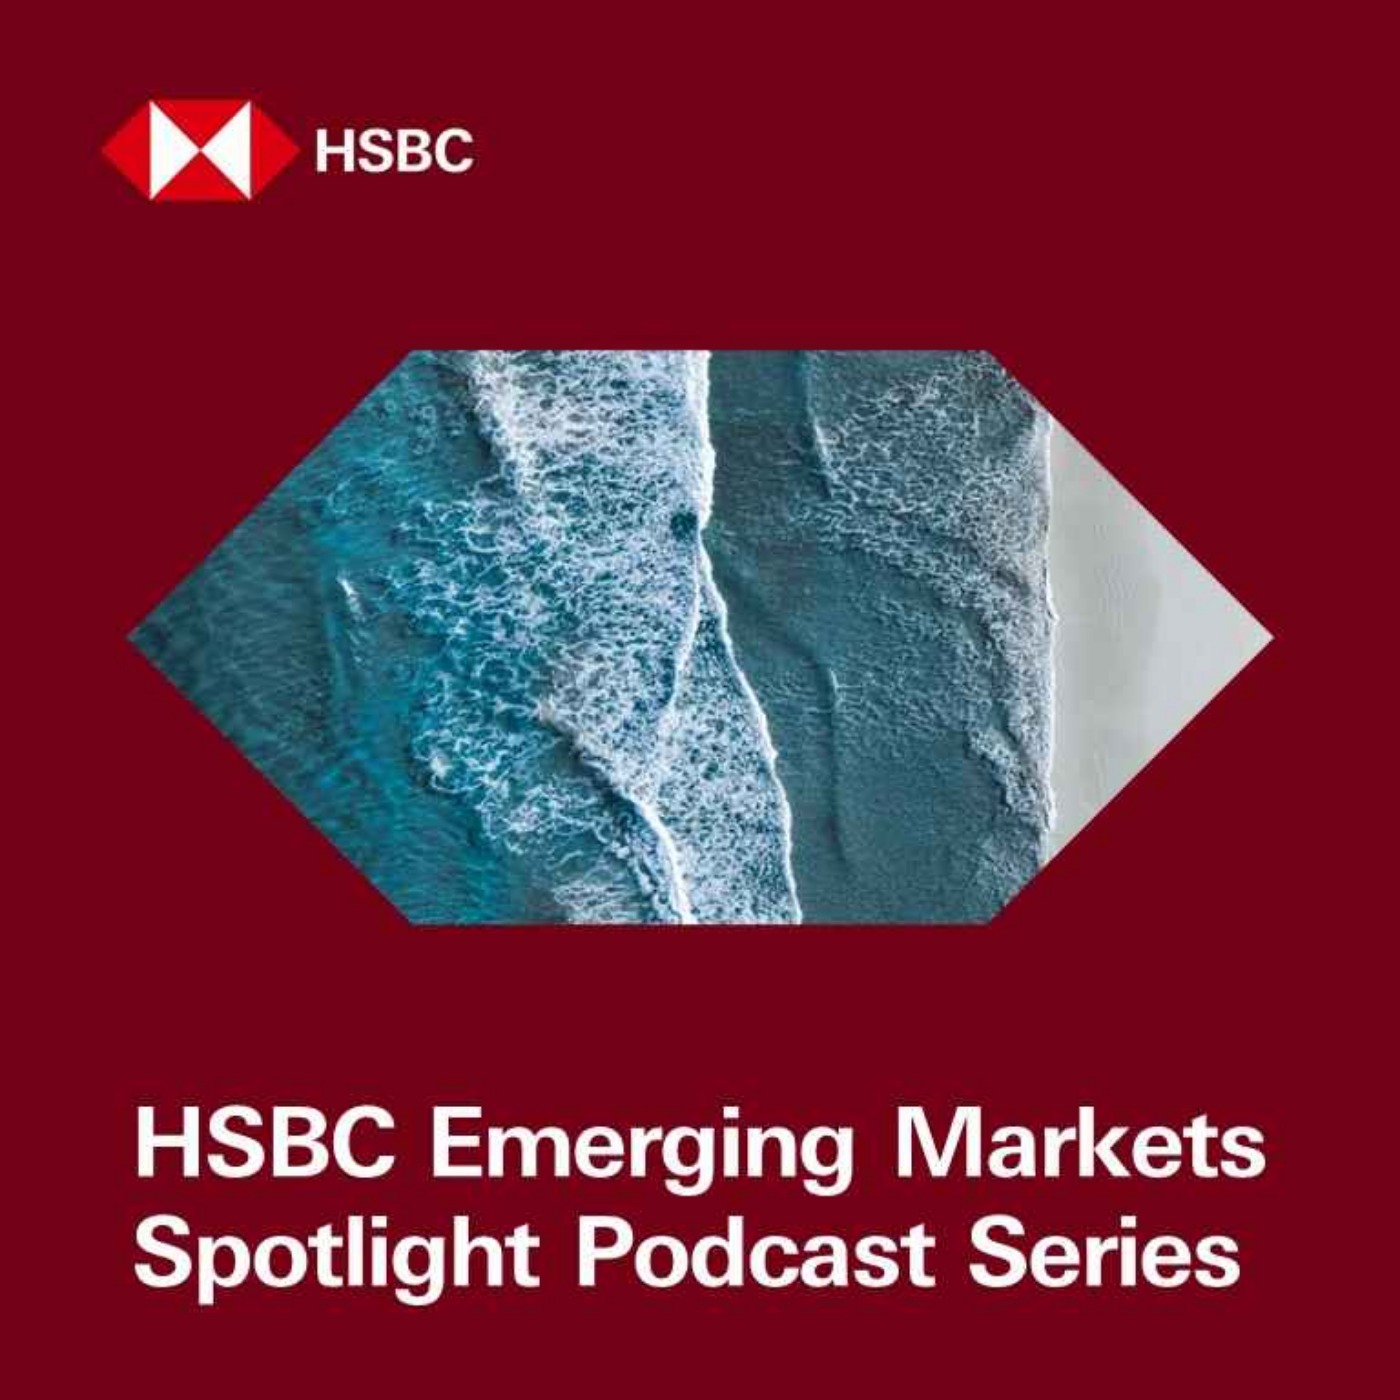 HSBC Emerging Markets Spotlight Podcast Series - Digital innovation in Markets